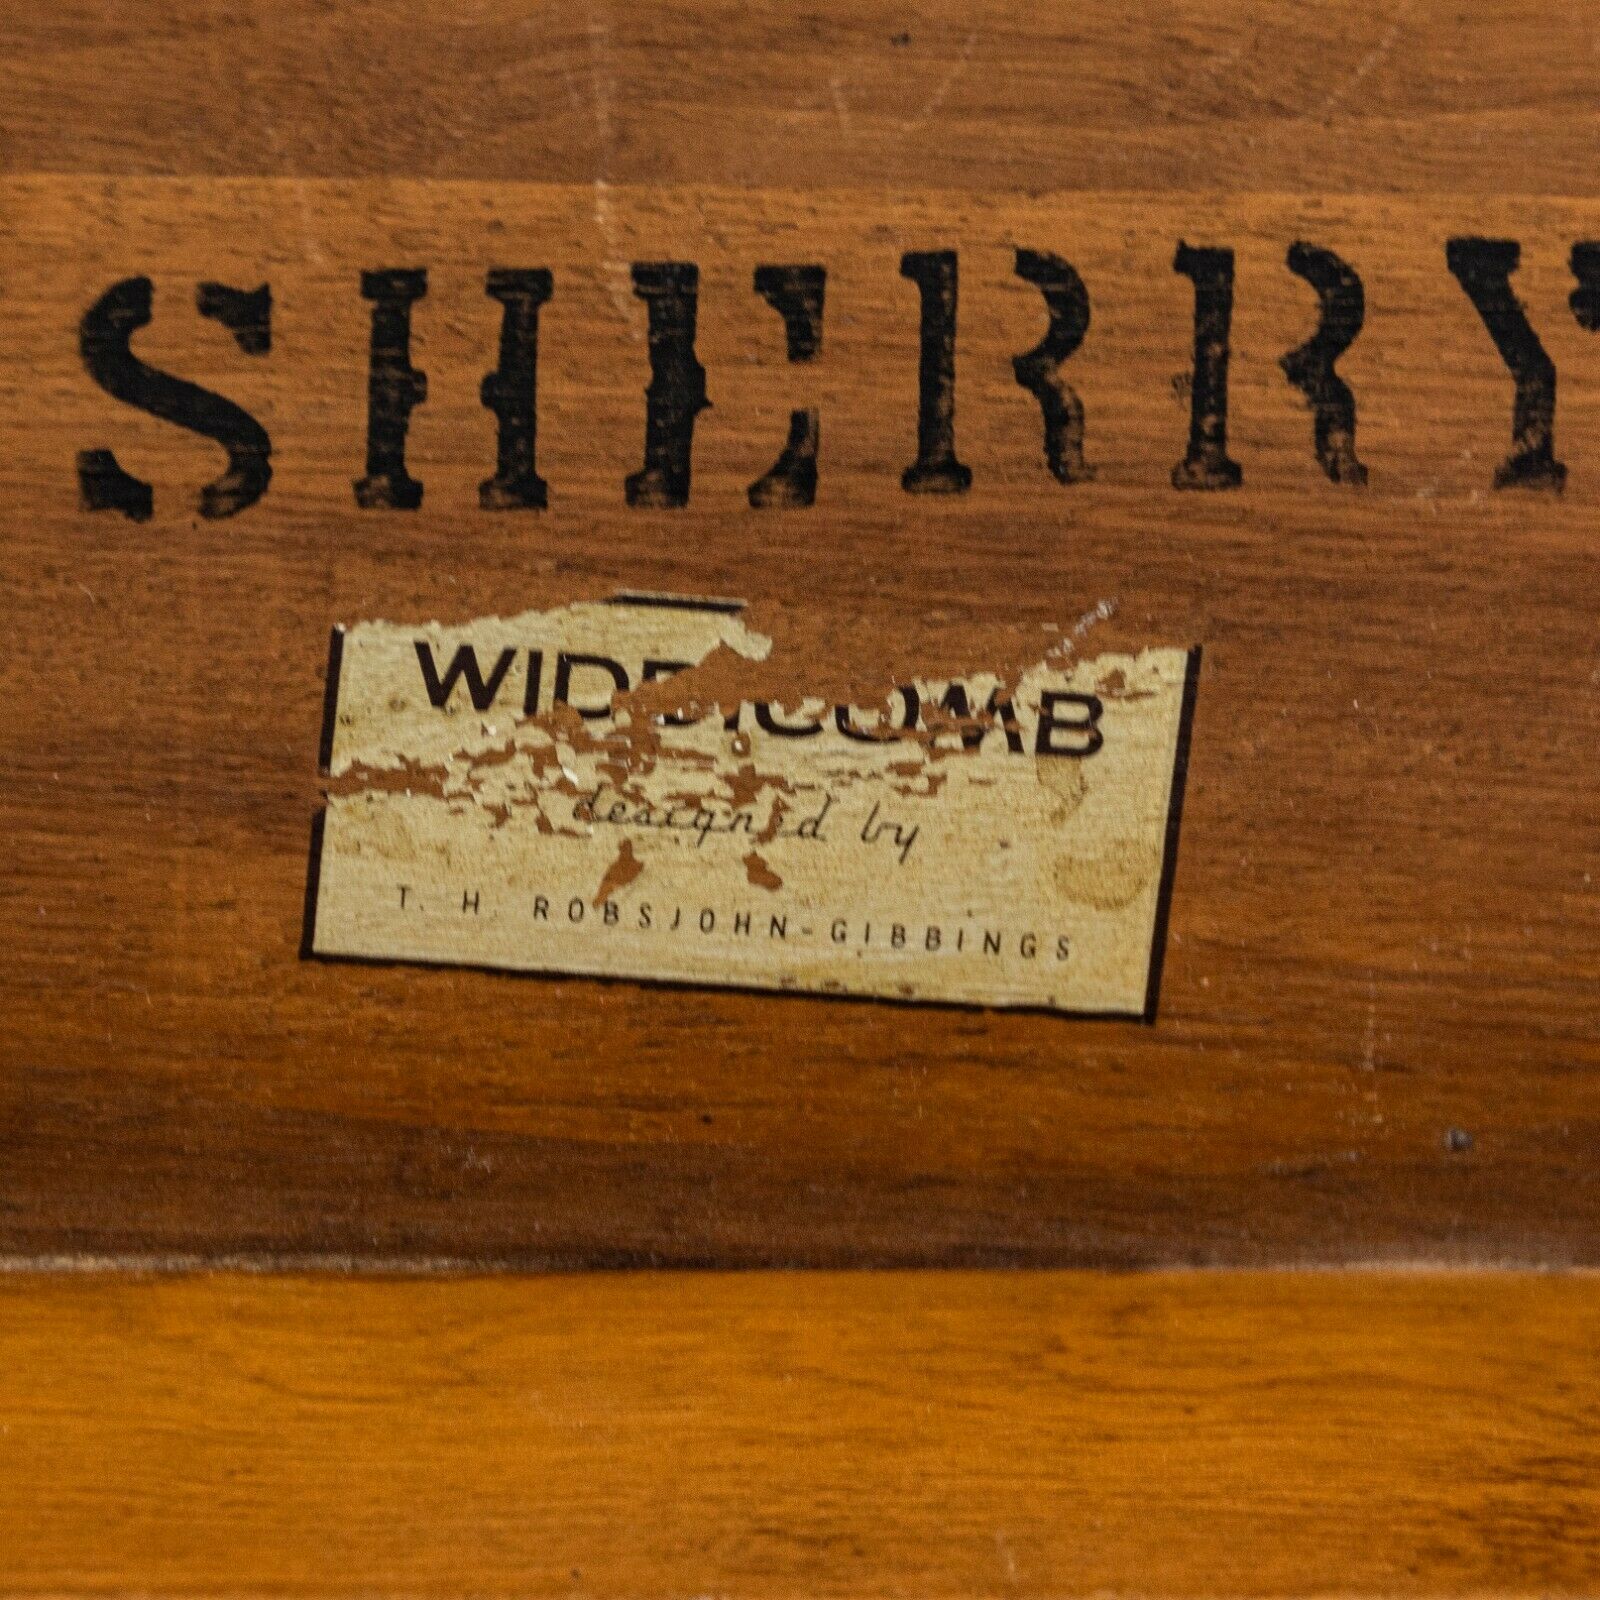 1955 T.H. Robsjohn Gibbings for Widdicomb 3307 Coffee Table in Sherry Walnut